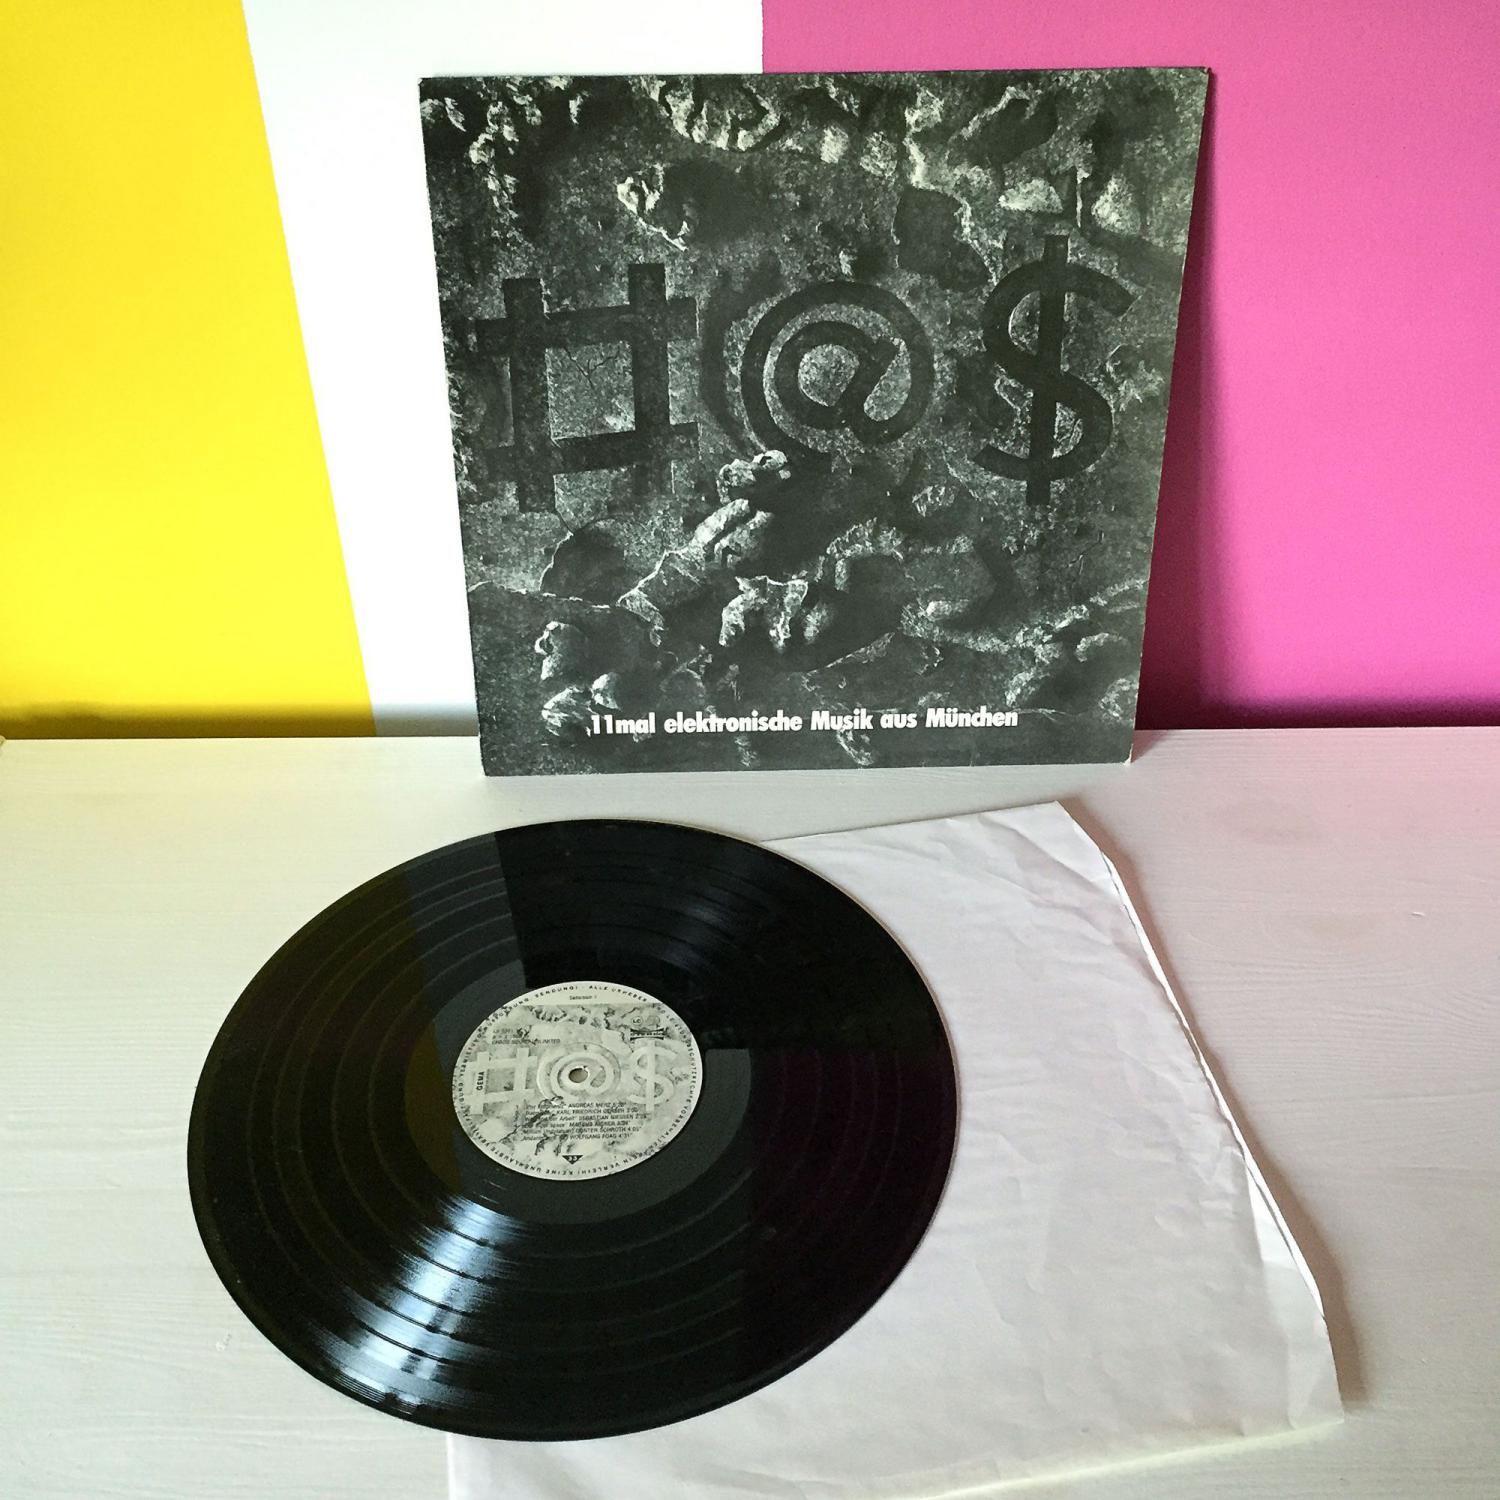 11mal elektronische Musik aus München – LP-Cover & vinyl